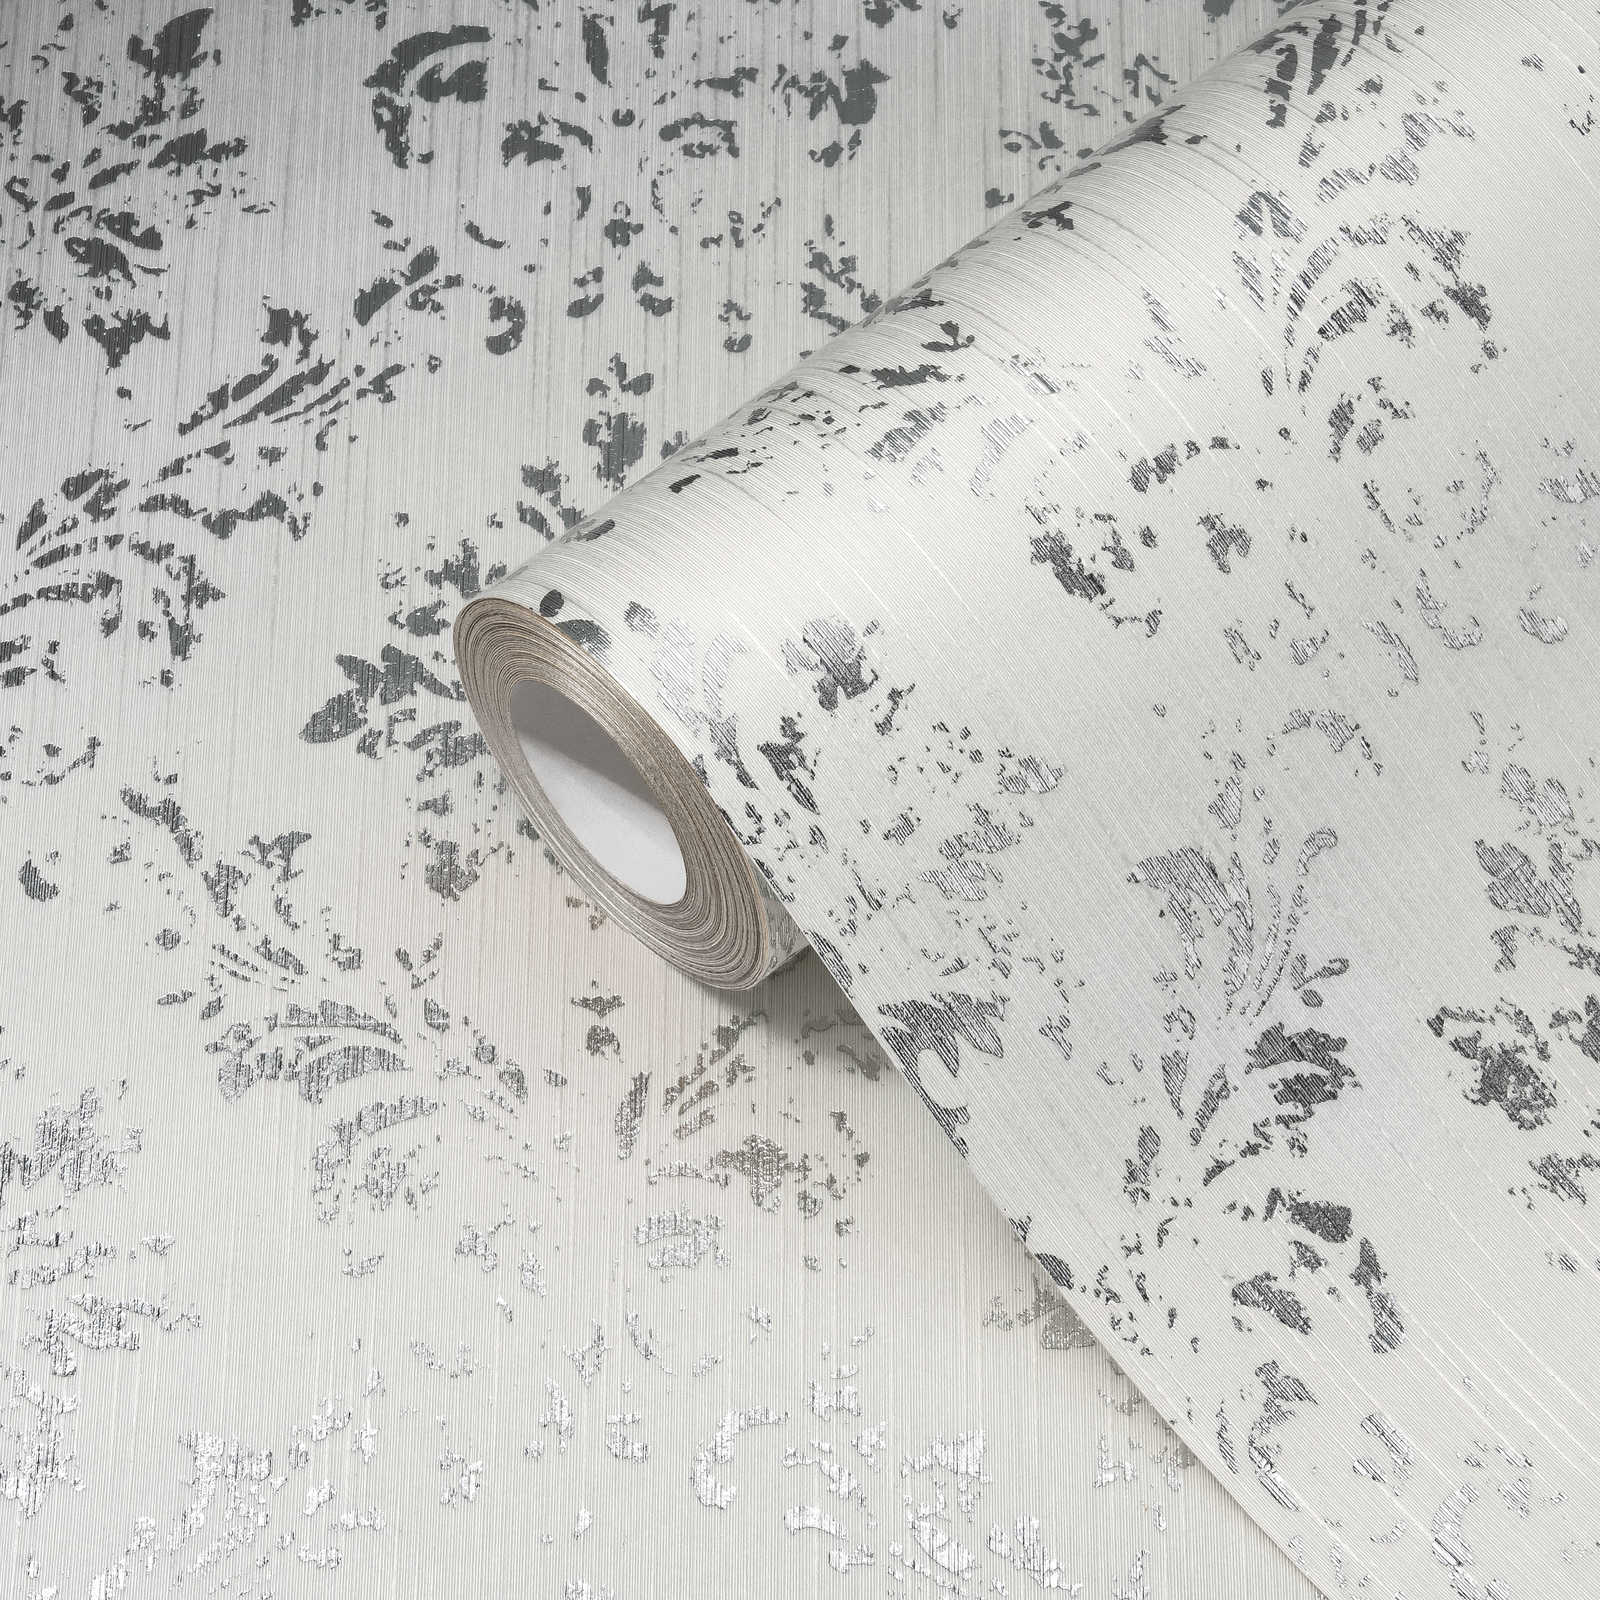             Papier peint avec ornements argentés, look usé - blanc, argenté
        